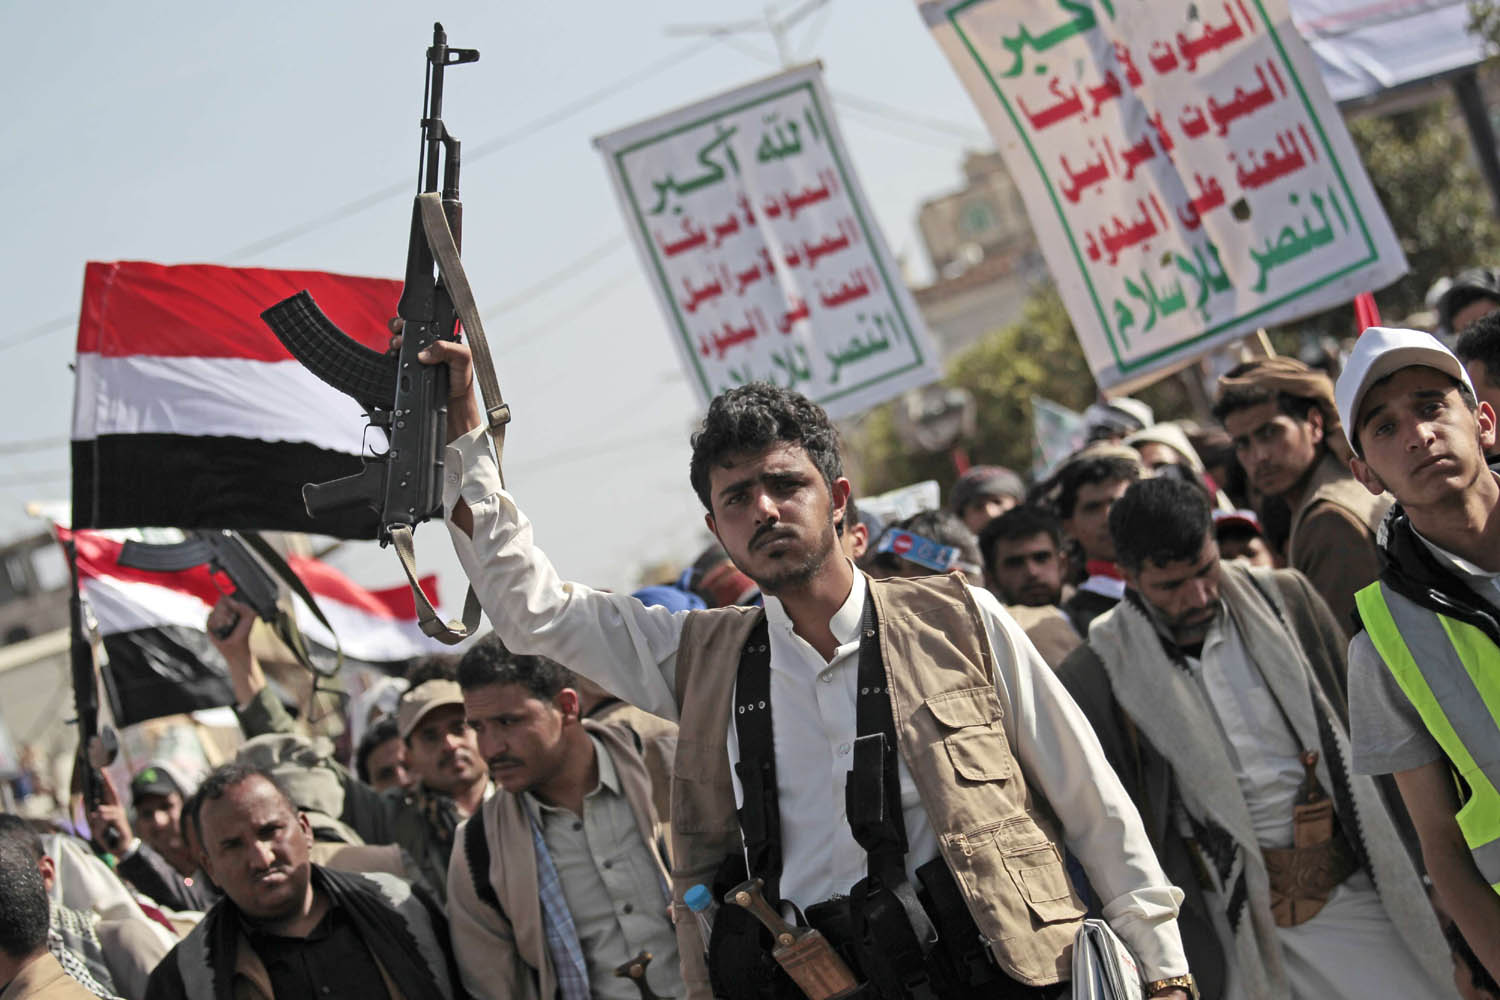 حوثيون يتظاهرون وسط صنعاء ضد الولايات المتحدة